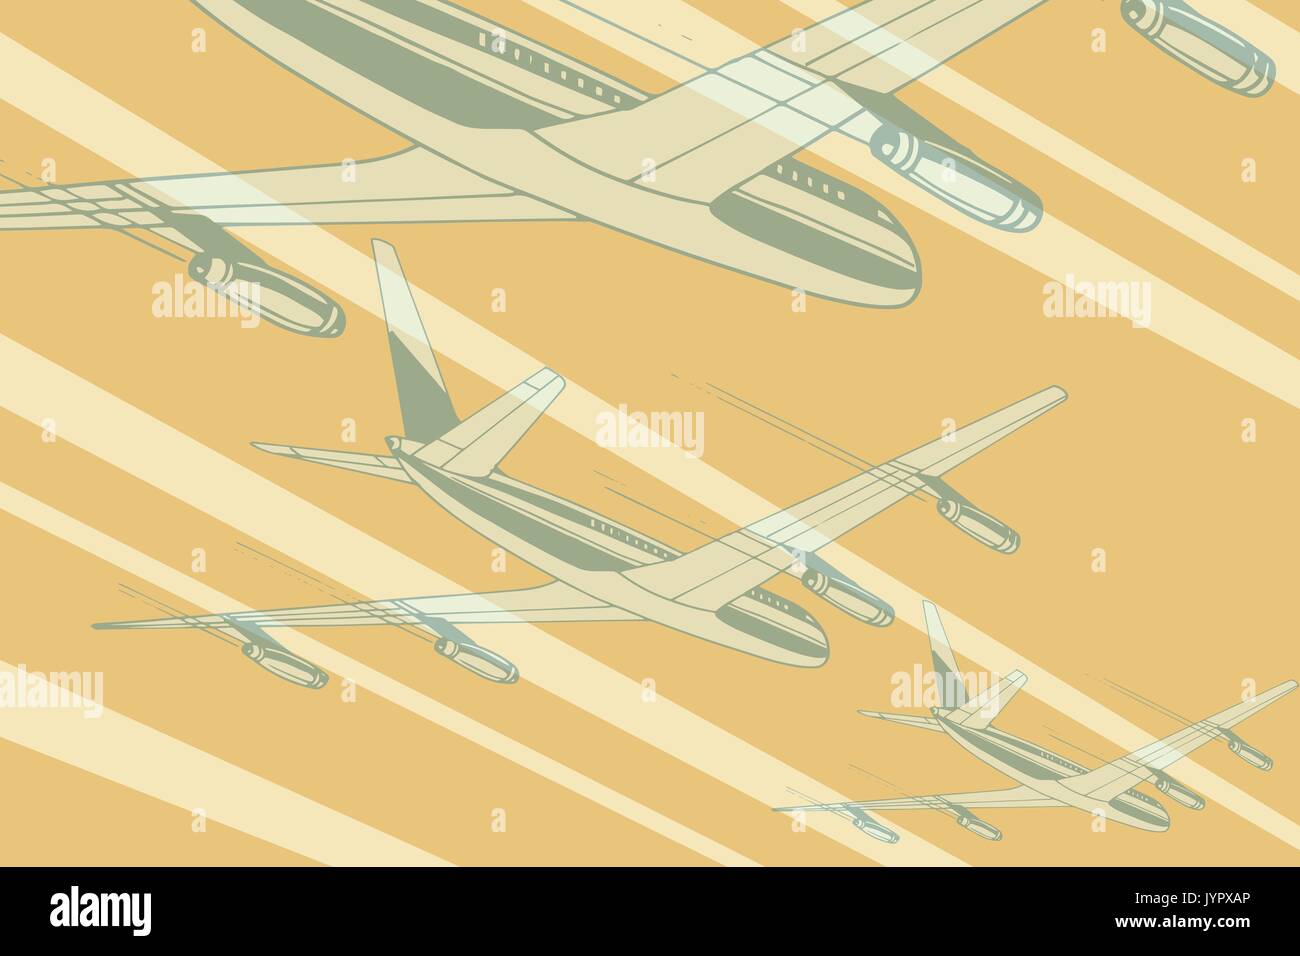 Der Luftverkehr in der Sky Travel Hintergrund. Flugzeug Luftfahrt reisen reise Tourismus Luftverkehr. Pop Art retro Vektor illustration Stock Vektor